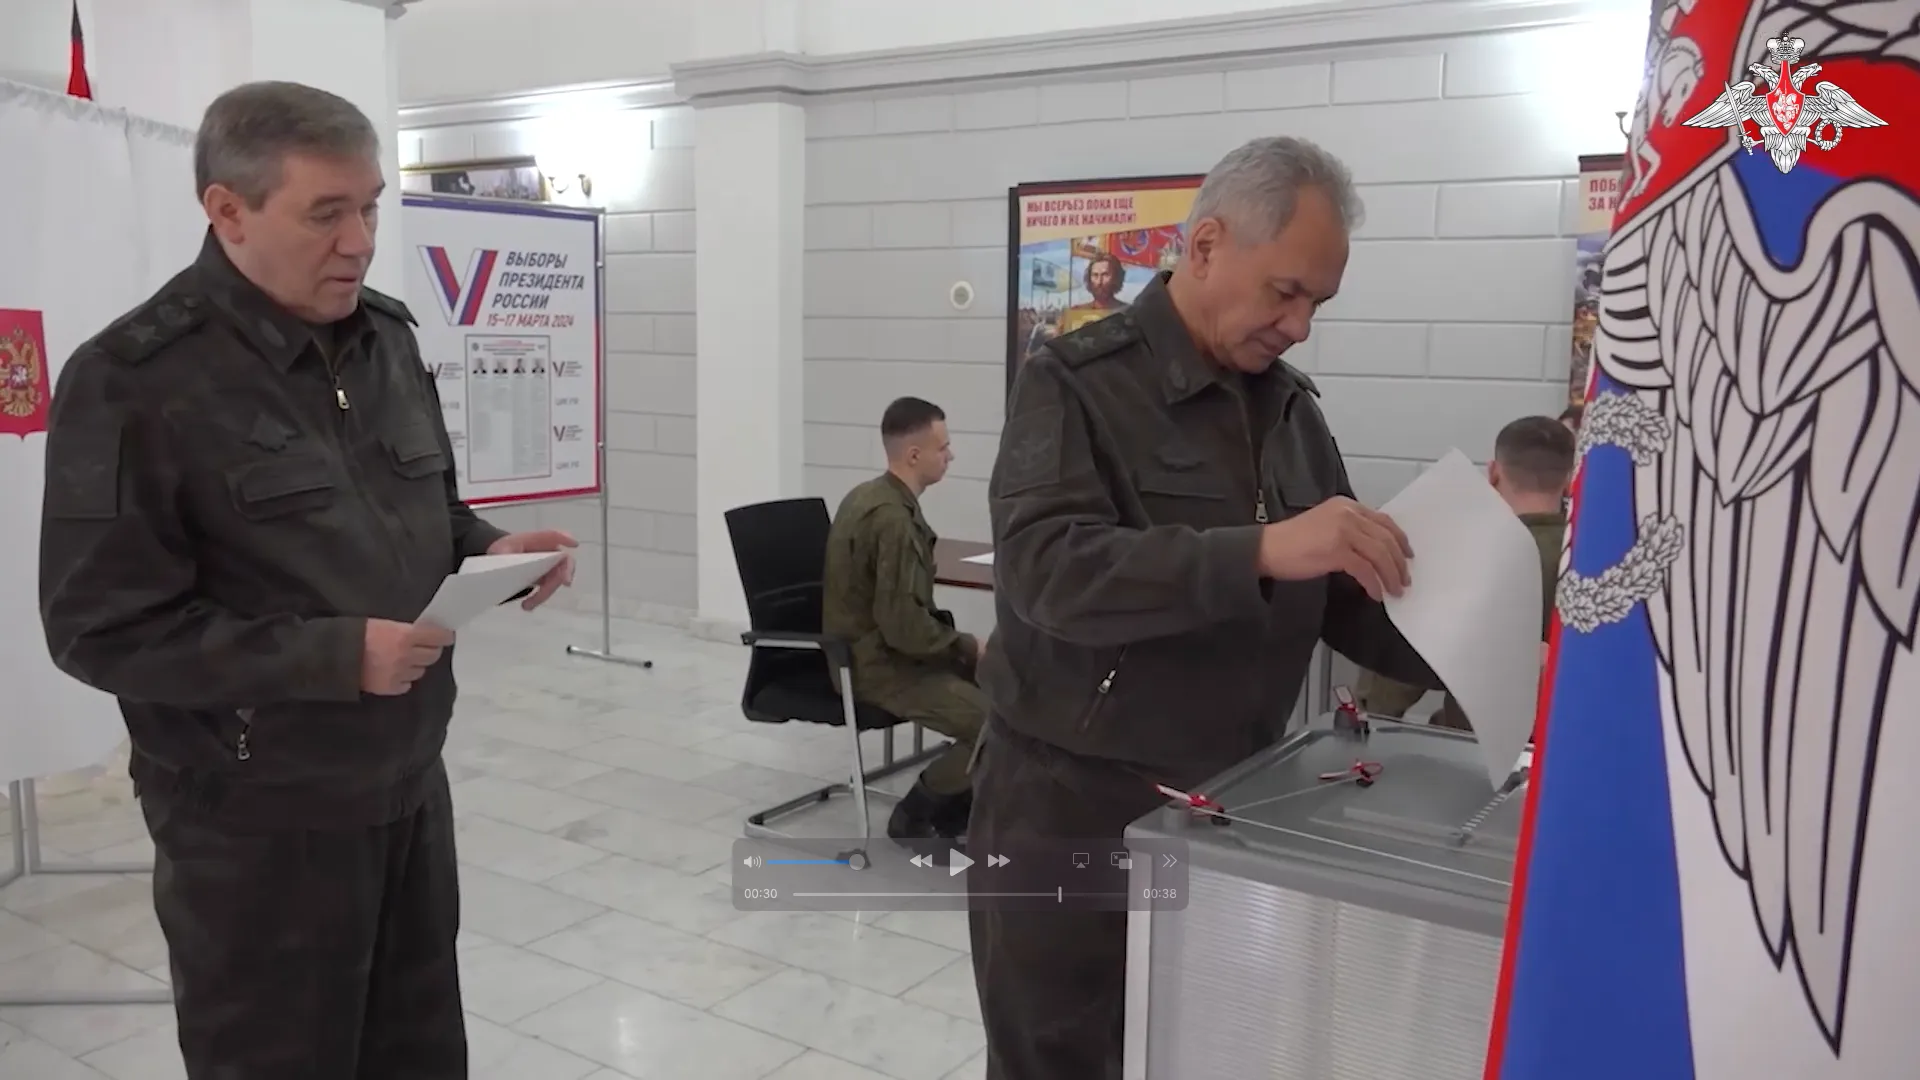 Шойгу и Герасимов с бойцами проголосовали на выборах президента в Южном военном округе